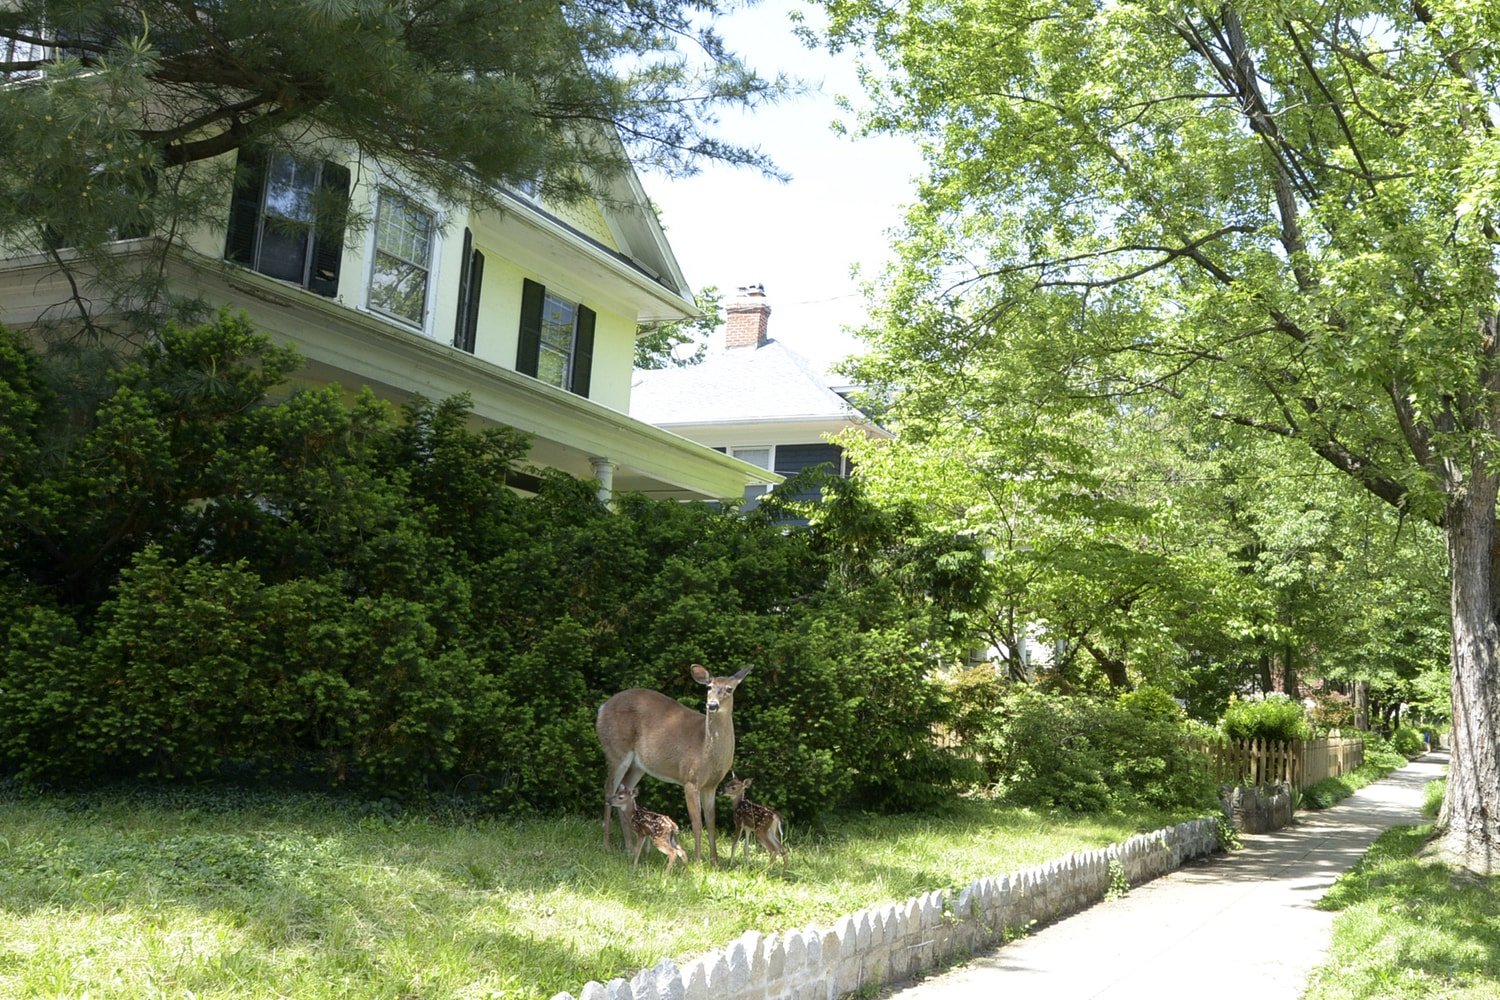 Deer in yard - Takoma - Washington, DC